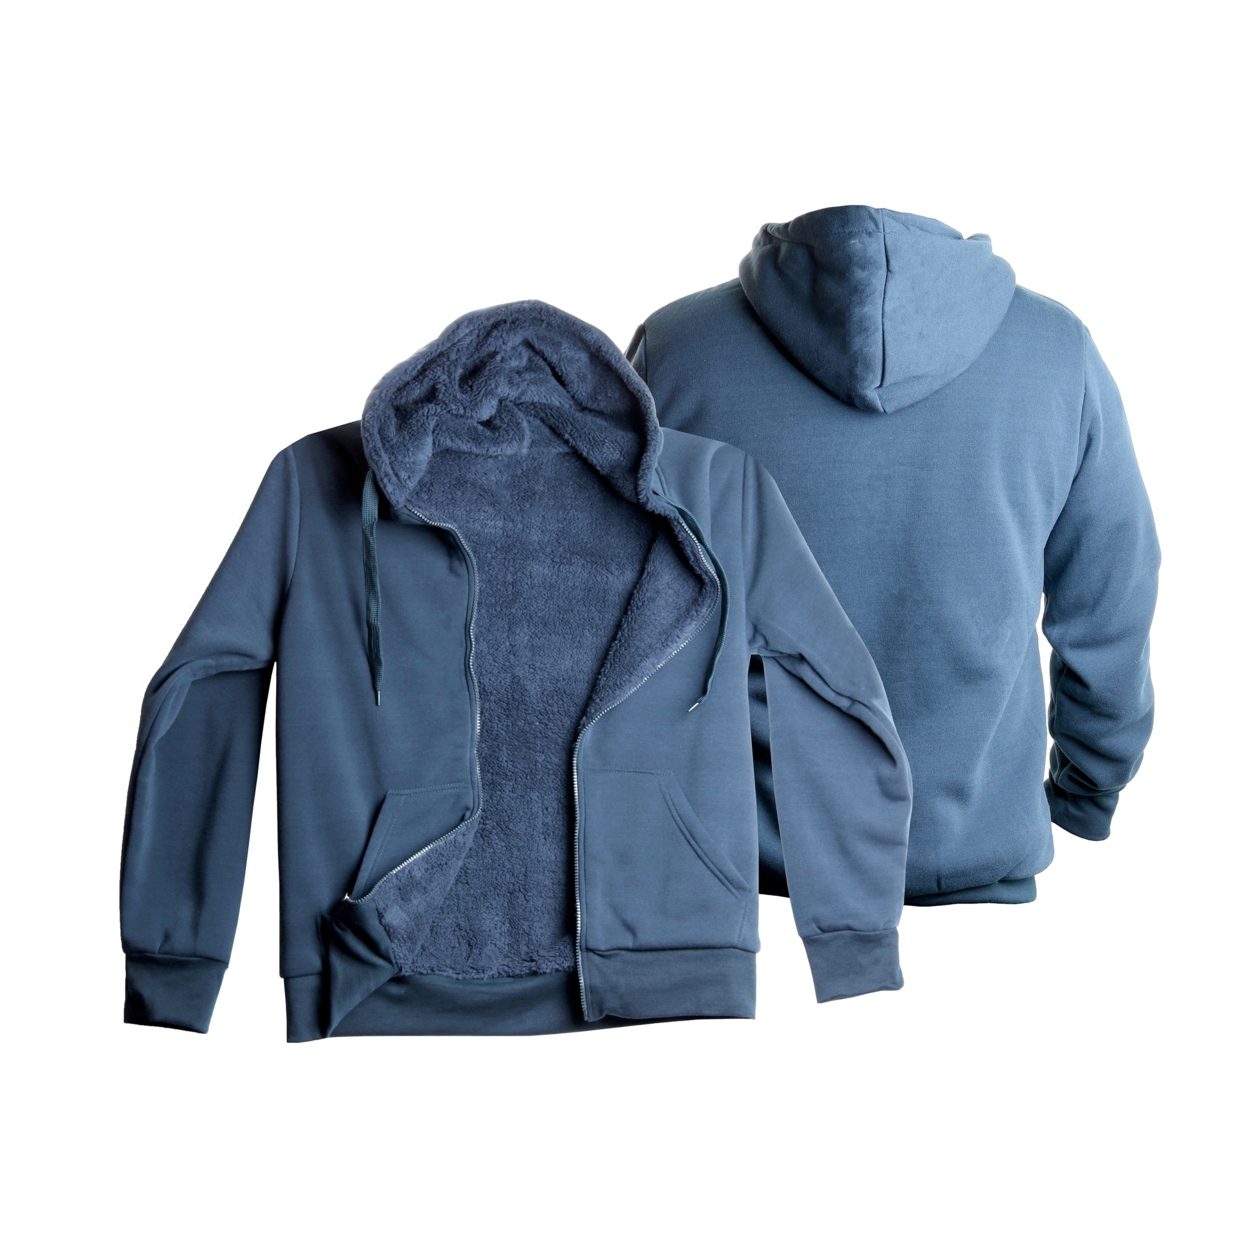 Men's Heavyweight Sherpa-Lined Fleece Hoodies - Blue, X-Large